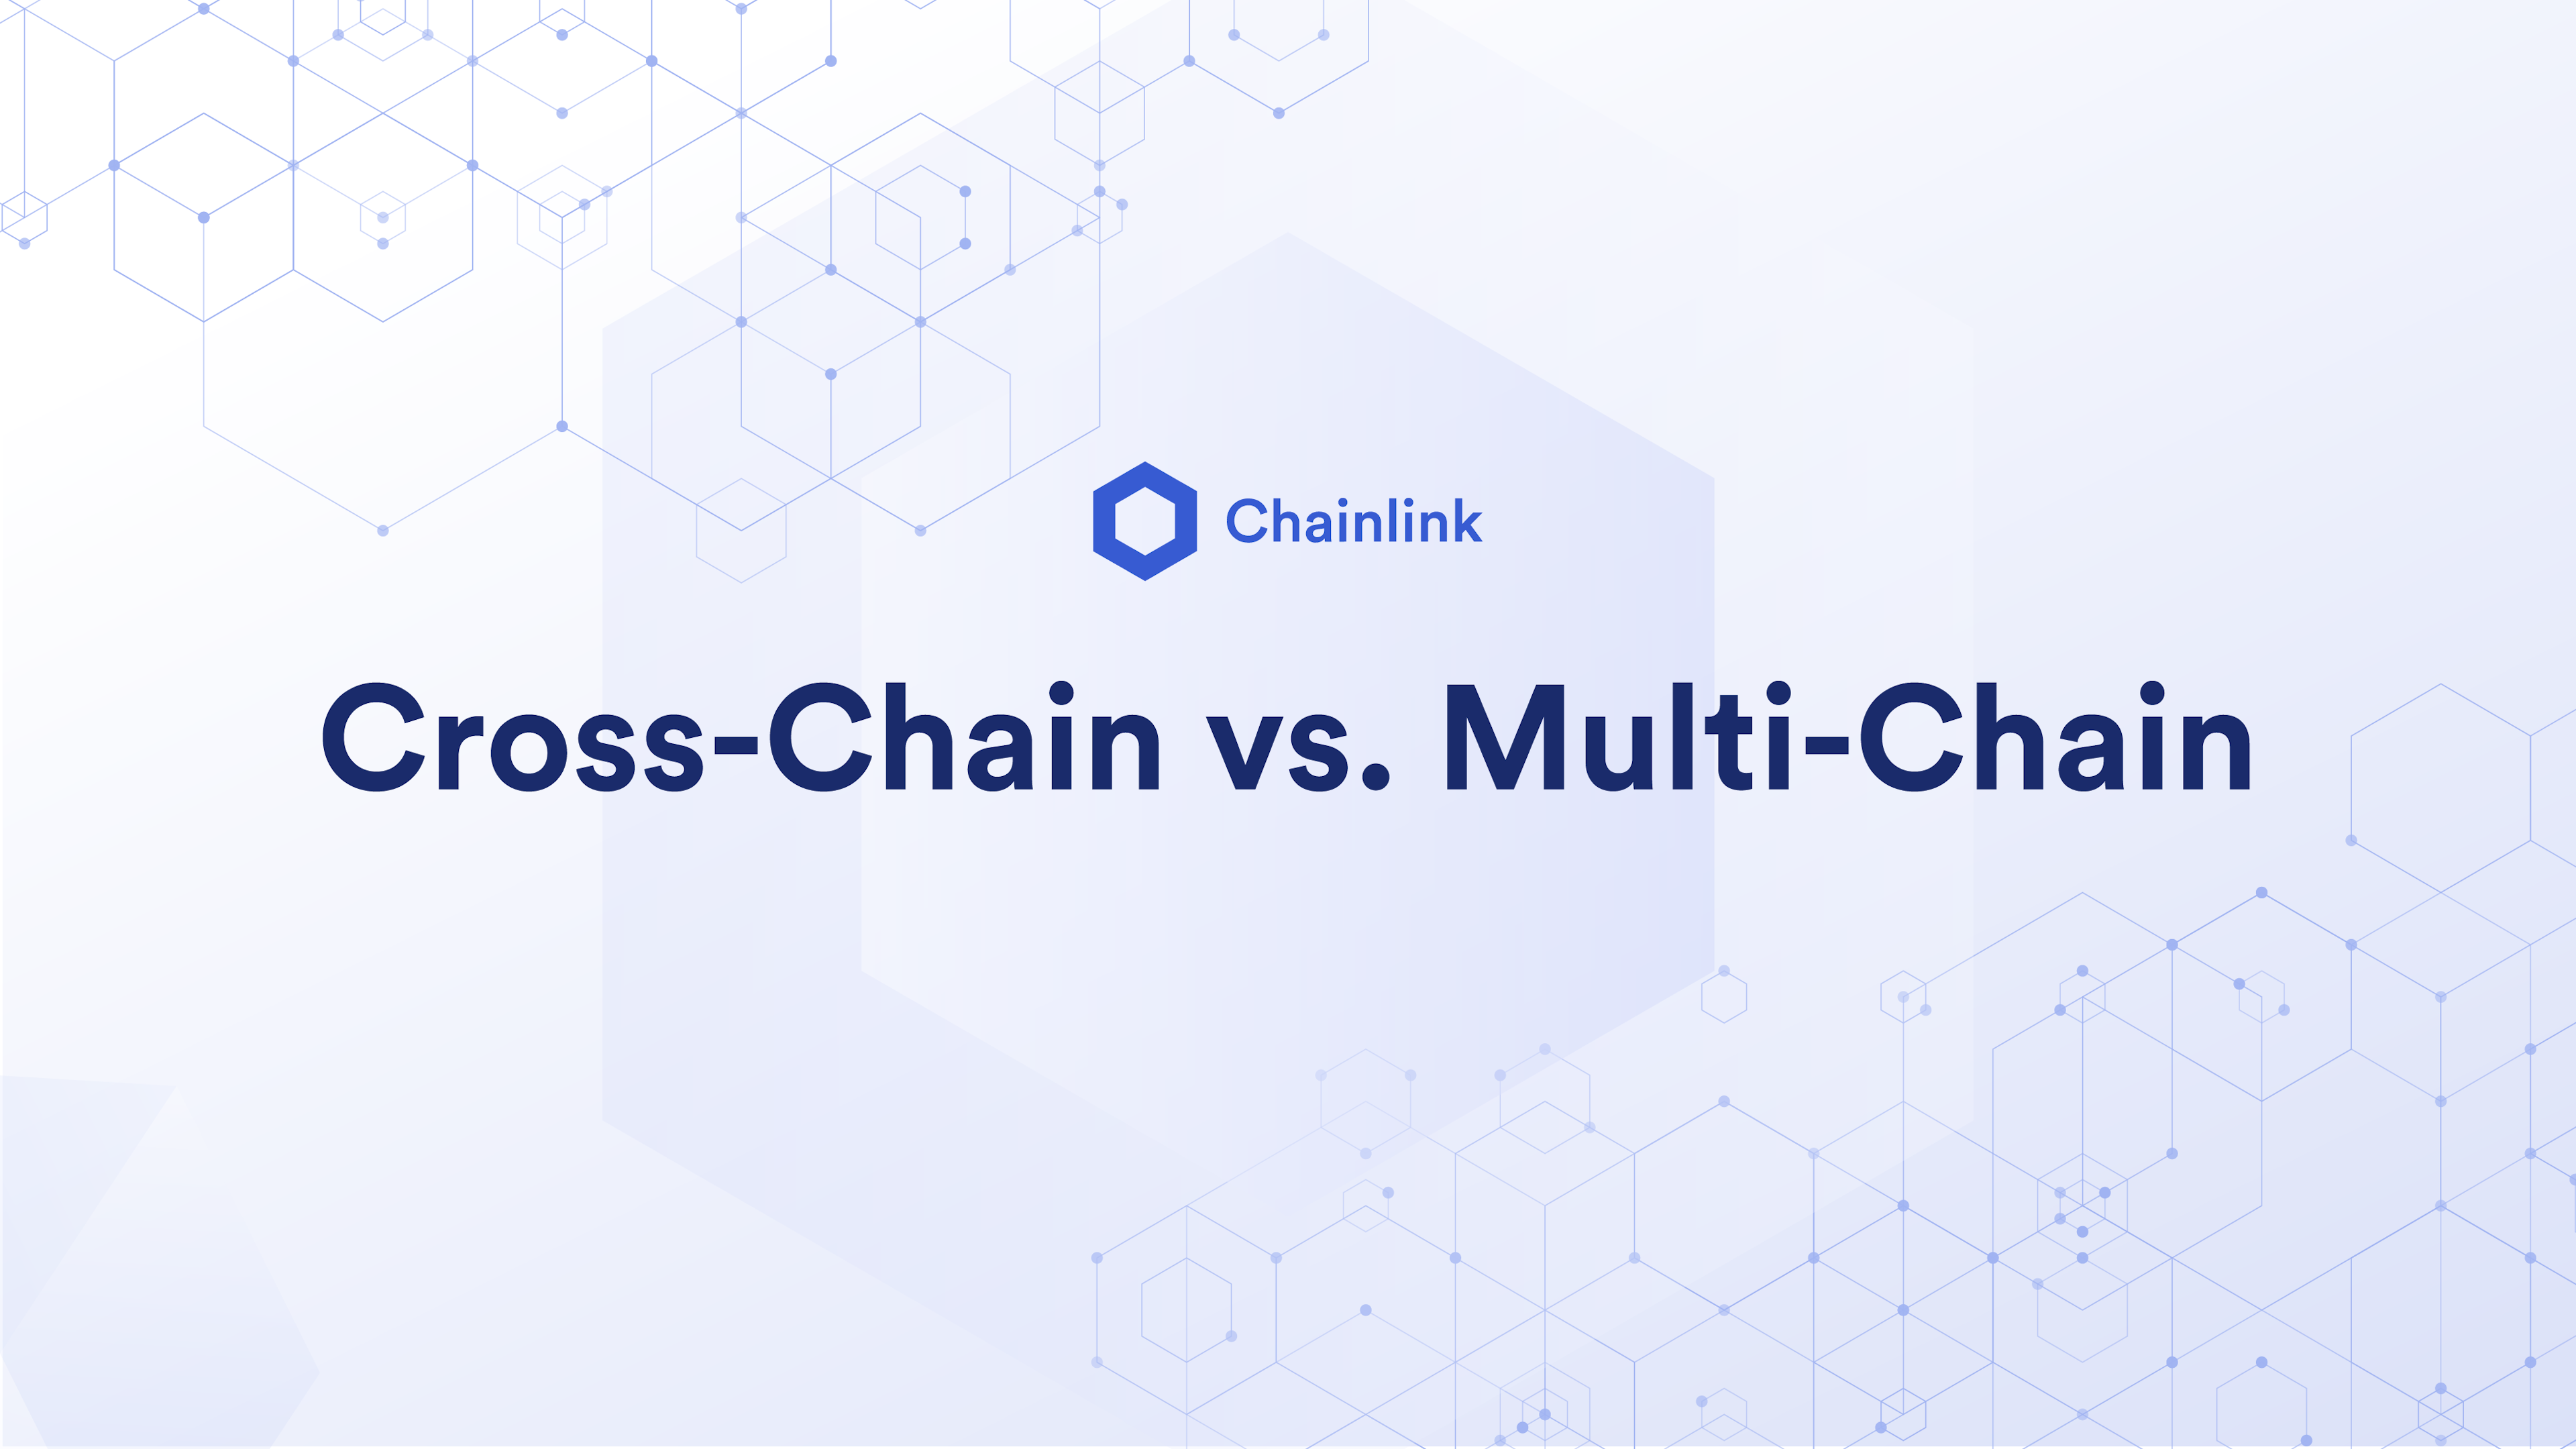 Cross-chain vs Multi-chain